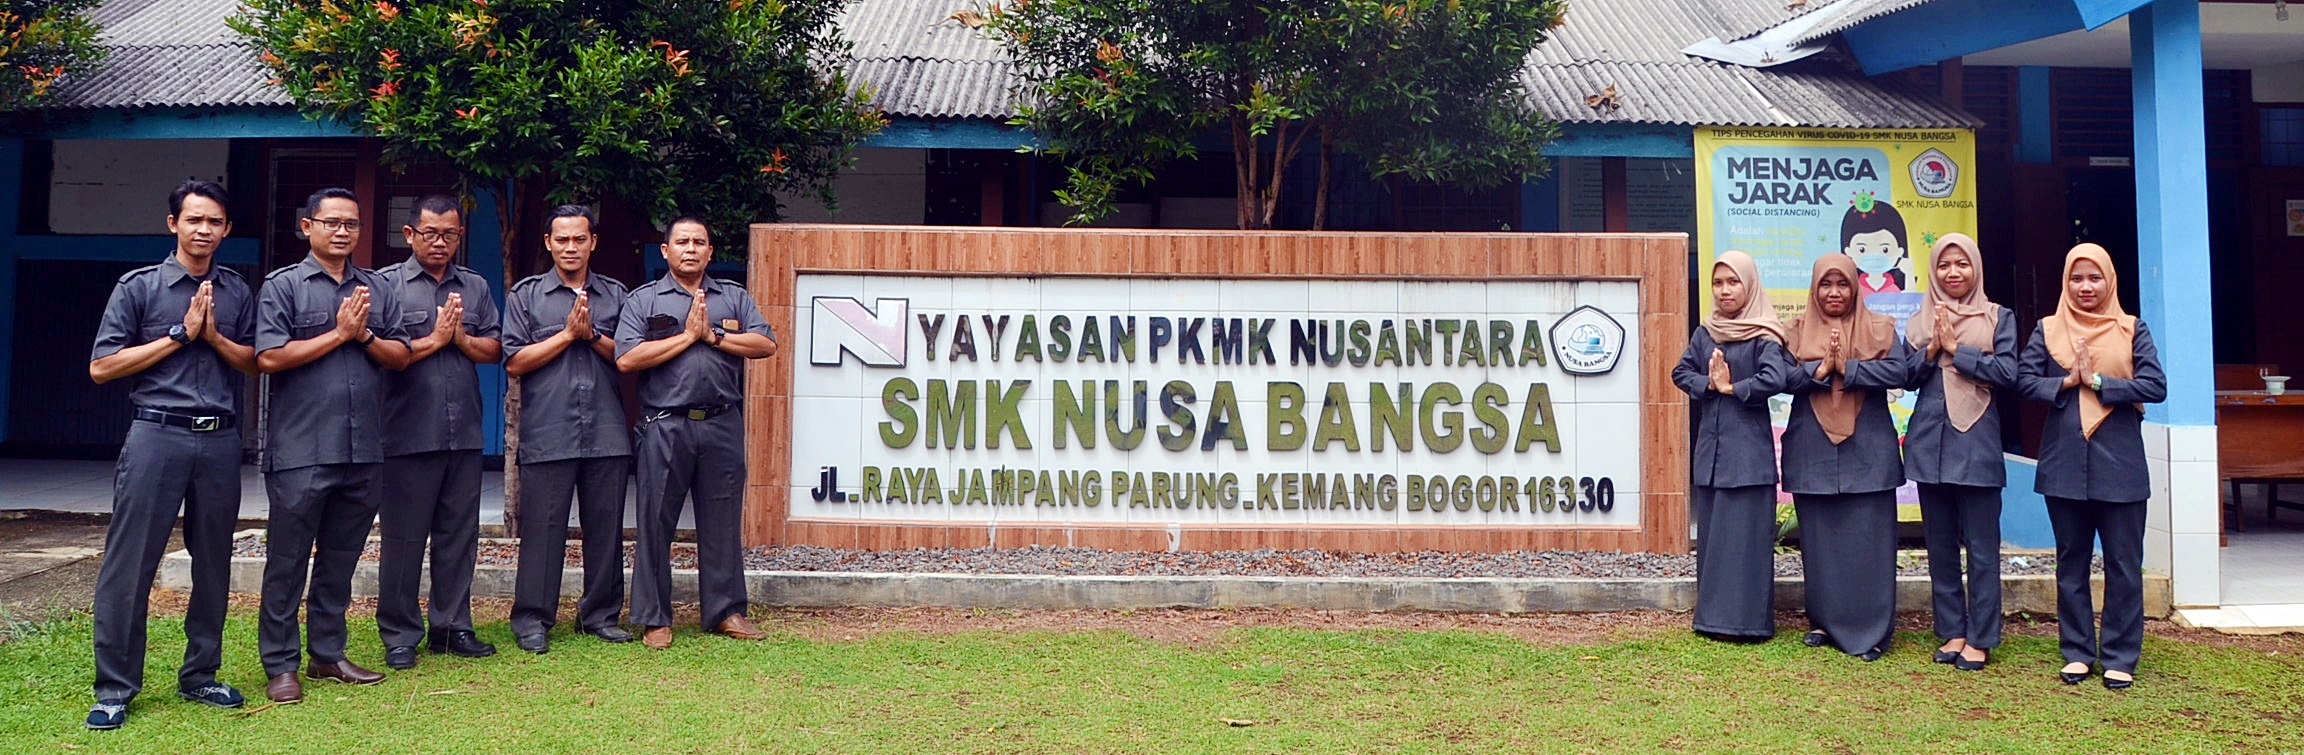 Halaman SMK Nusa Bangsa